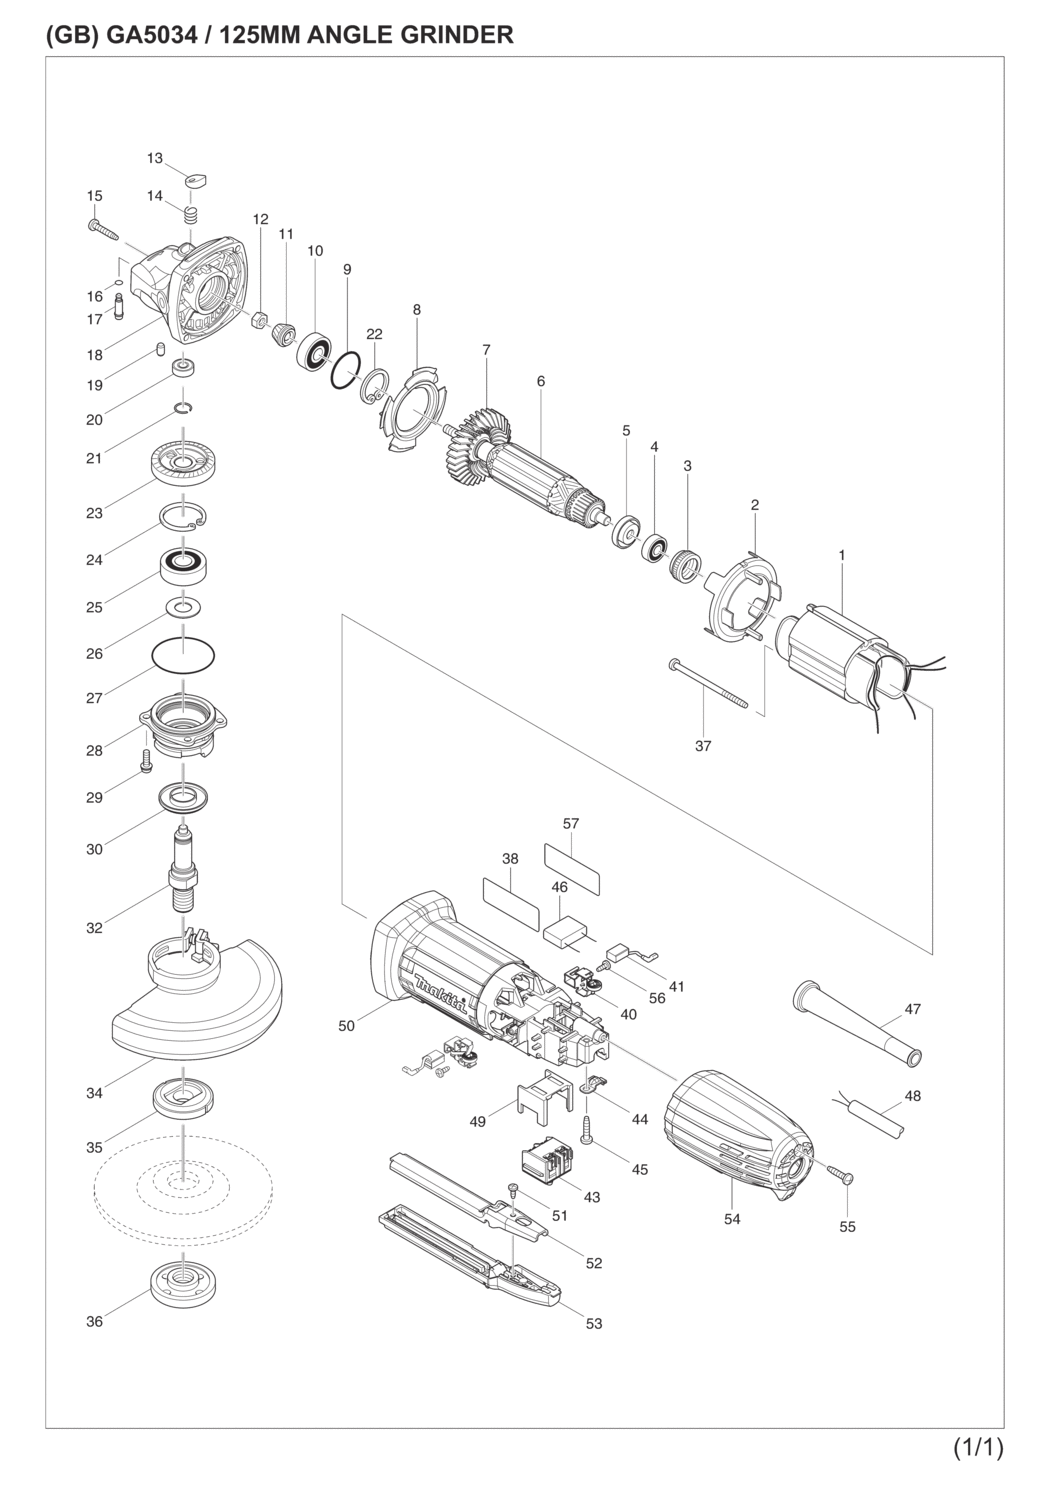 Makita GA5034 Angle Grinder Spare Parts